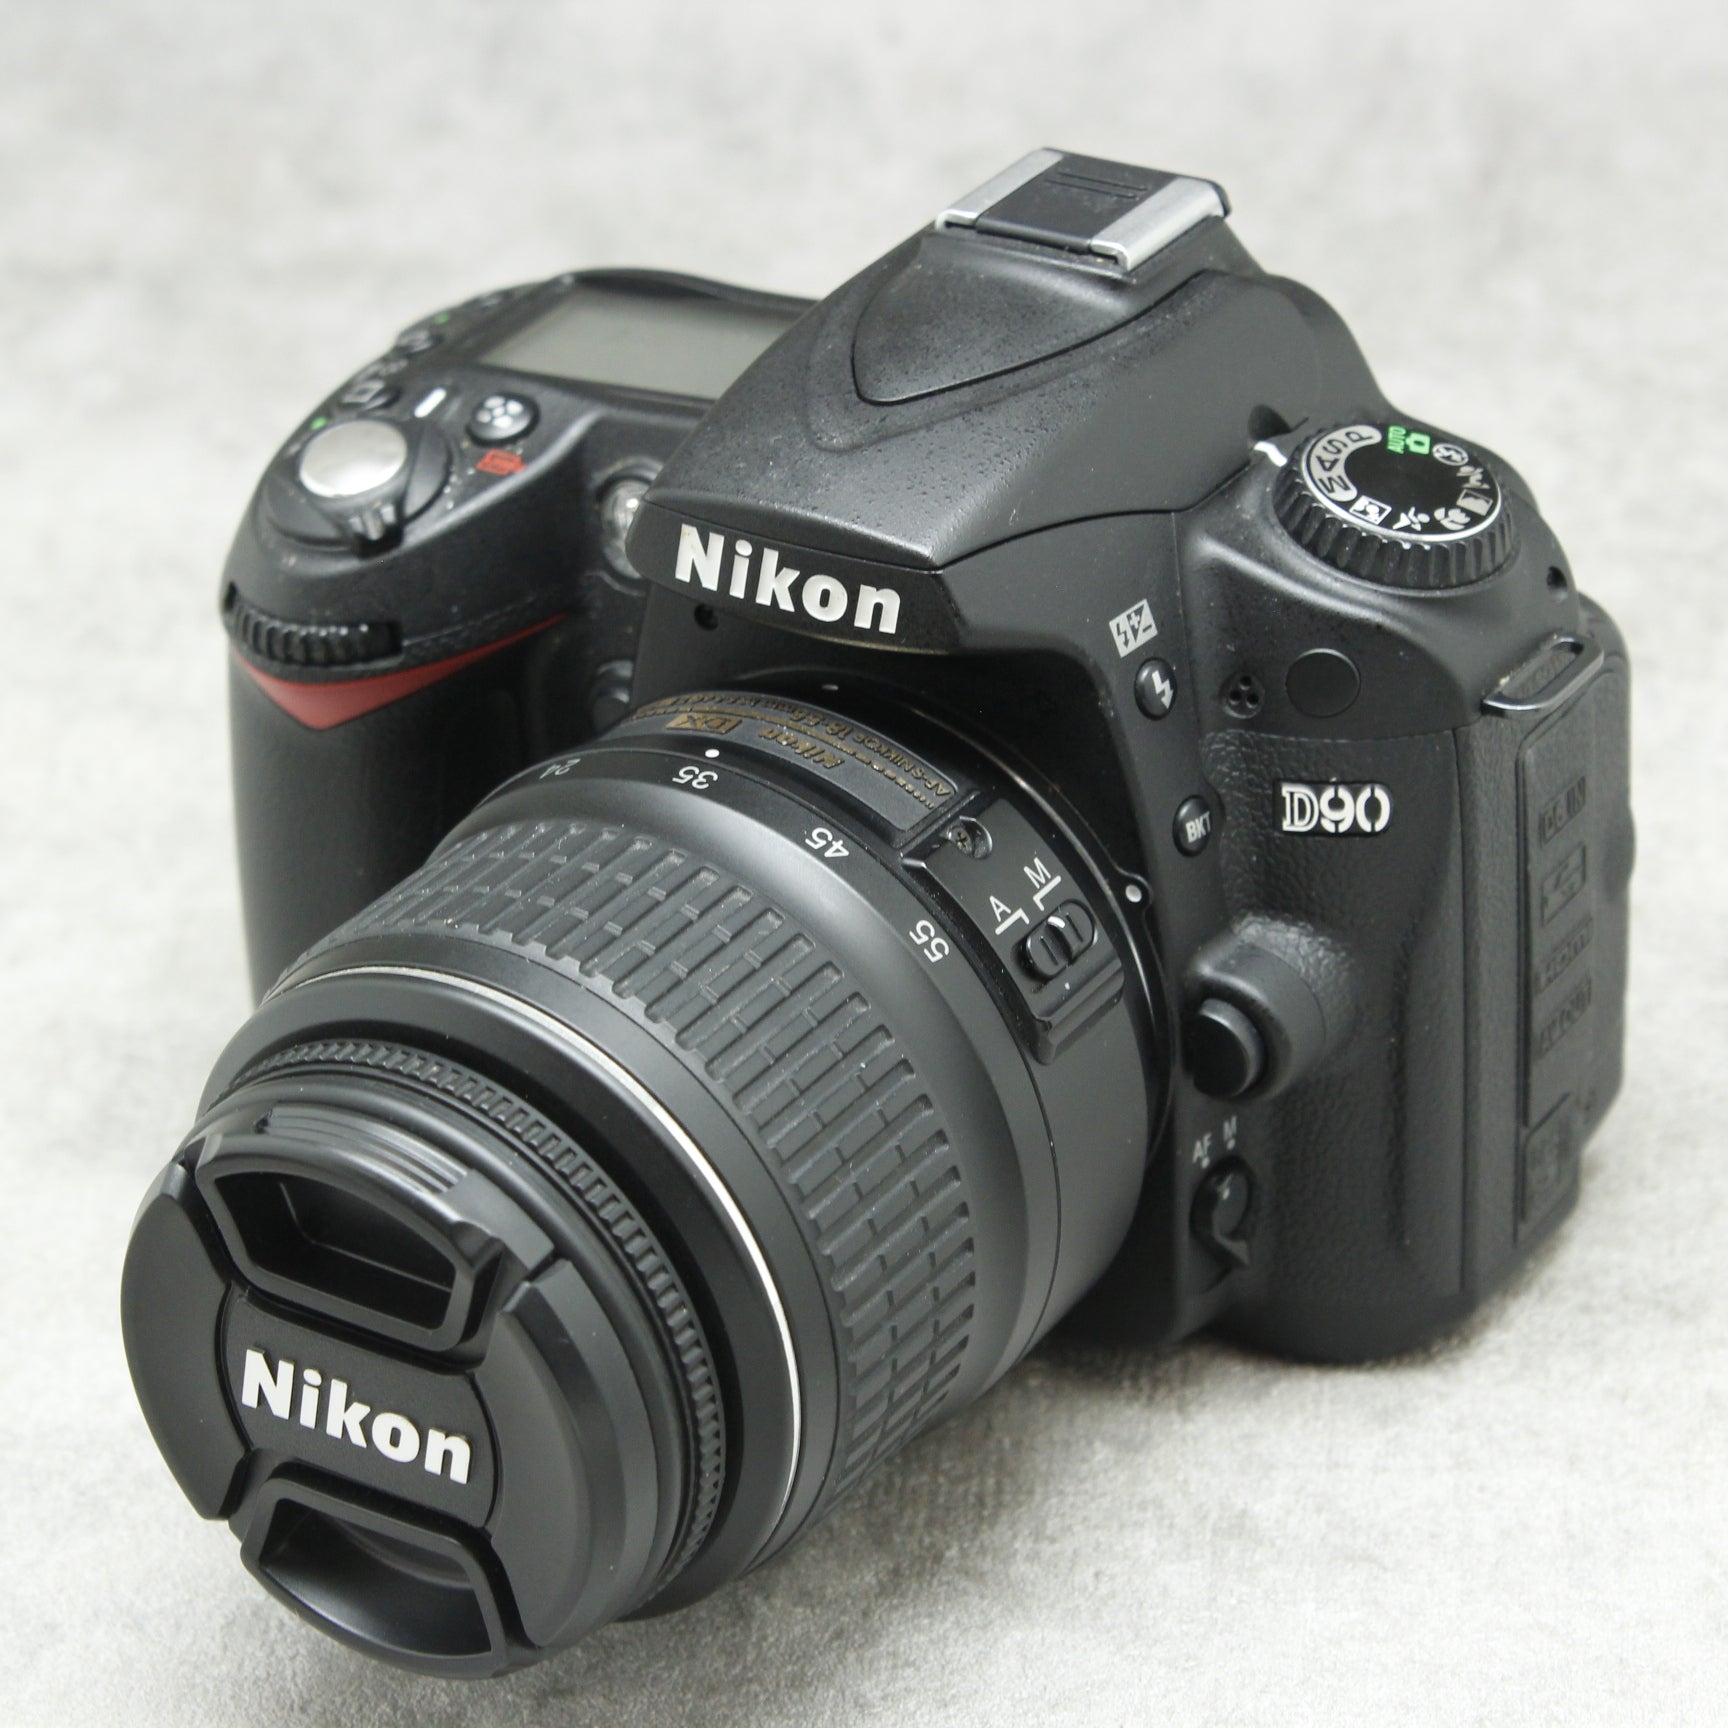 中古品 Nikon D90 標準レンズキット【訳アリ】 ☆3月25日(土)の